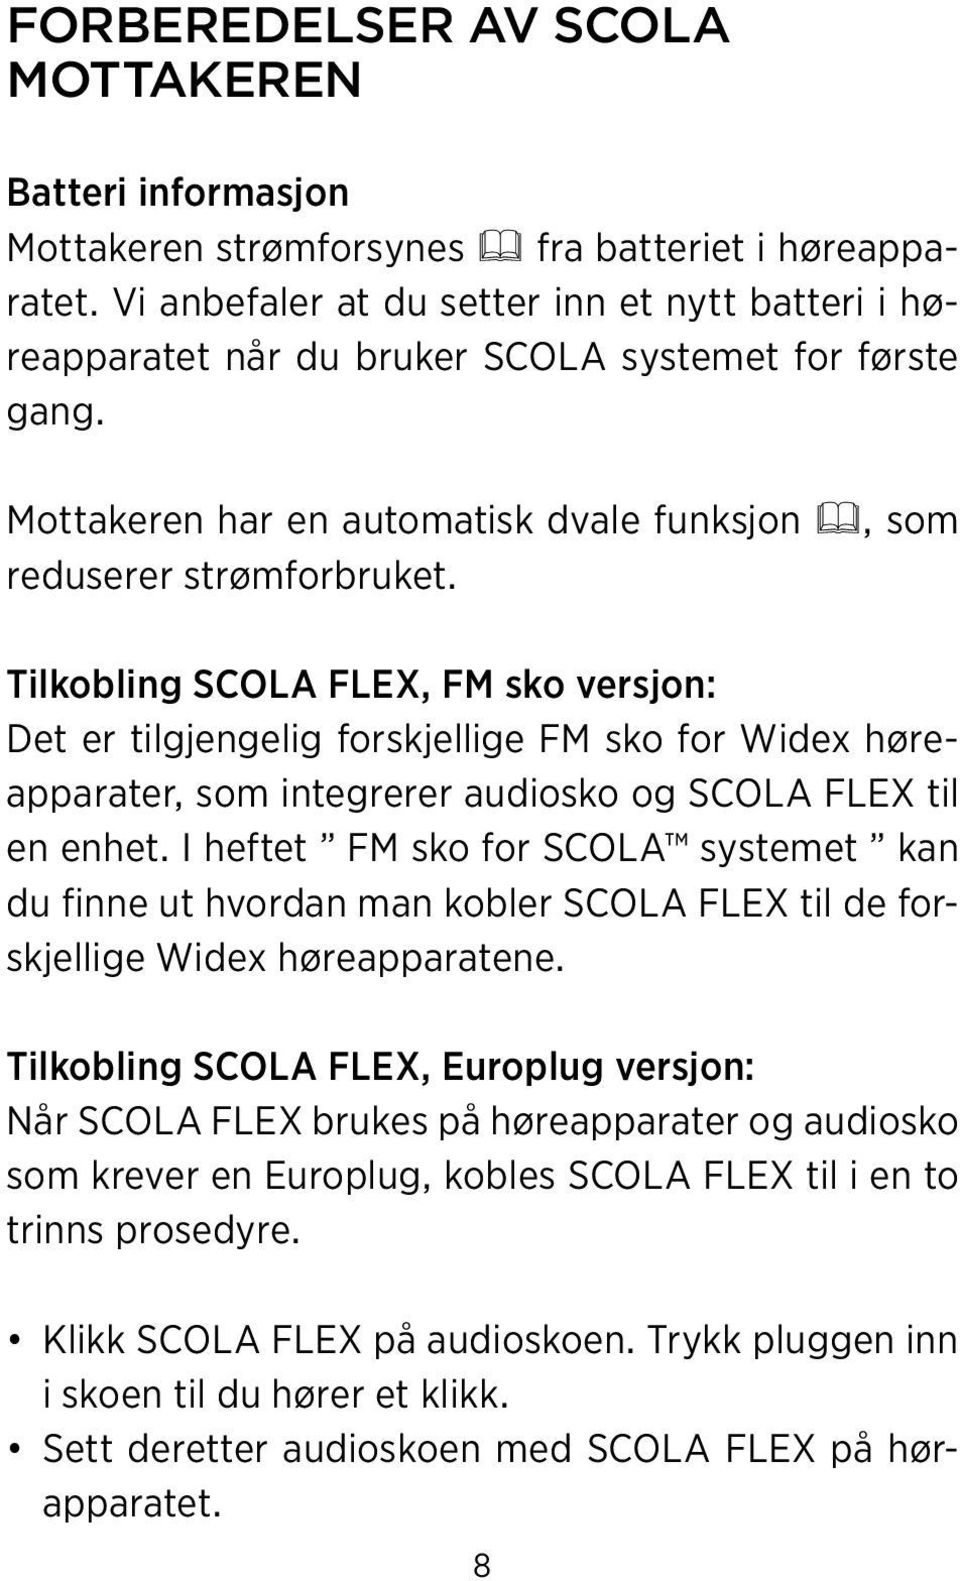 Tilkobling SCOLA FLEX, FM sko versjon: Det er tilgjengelig forskjellige FM sko for Widex høreapparater, som integrerer audiosko og SCOLA FLEX til en enhet.